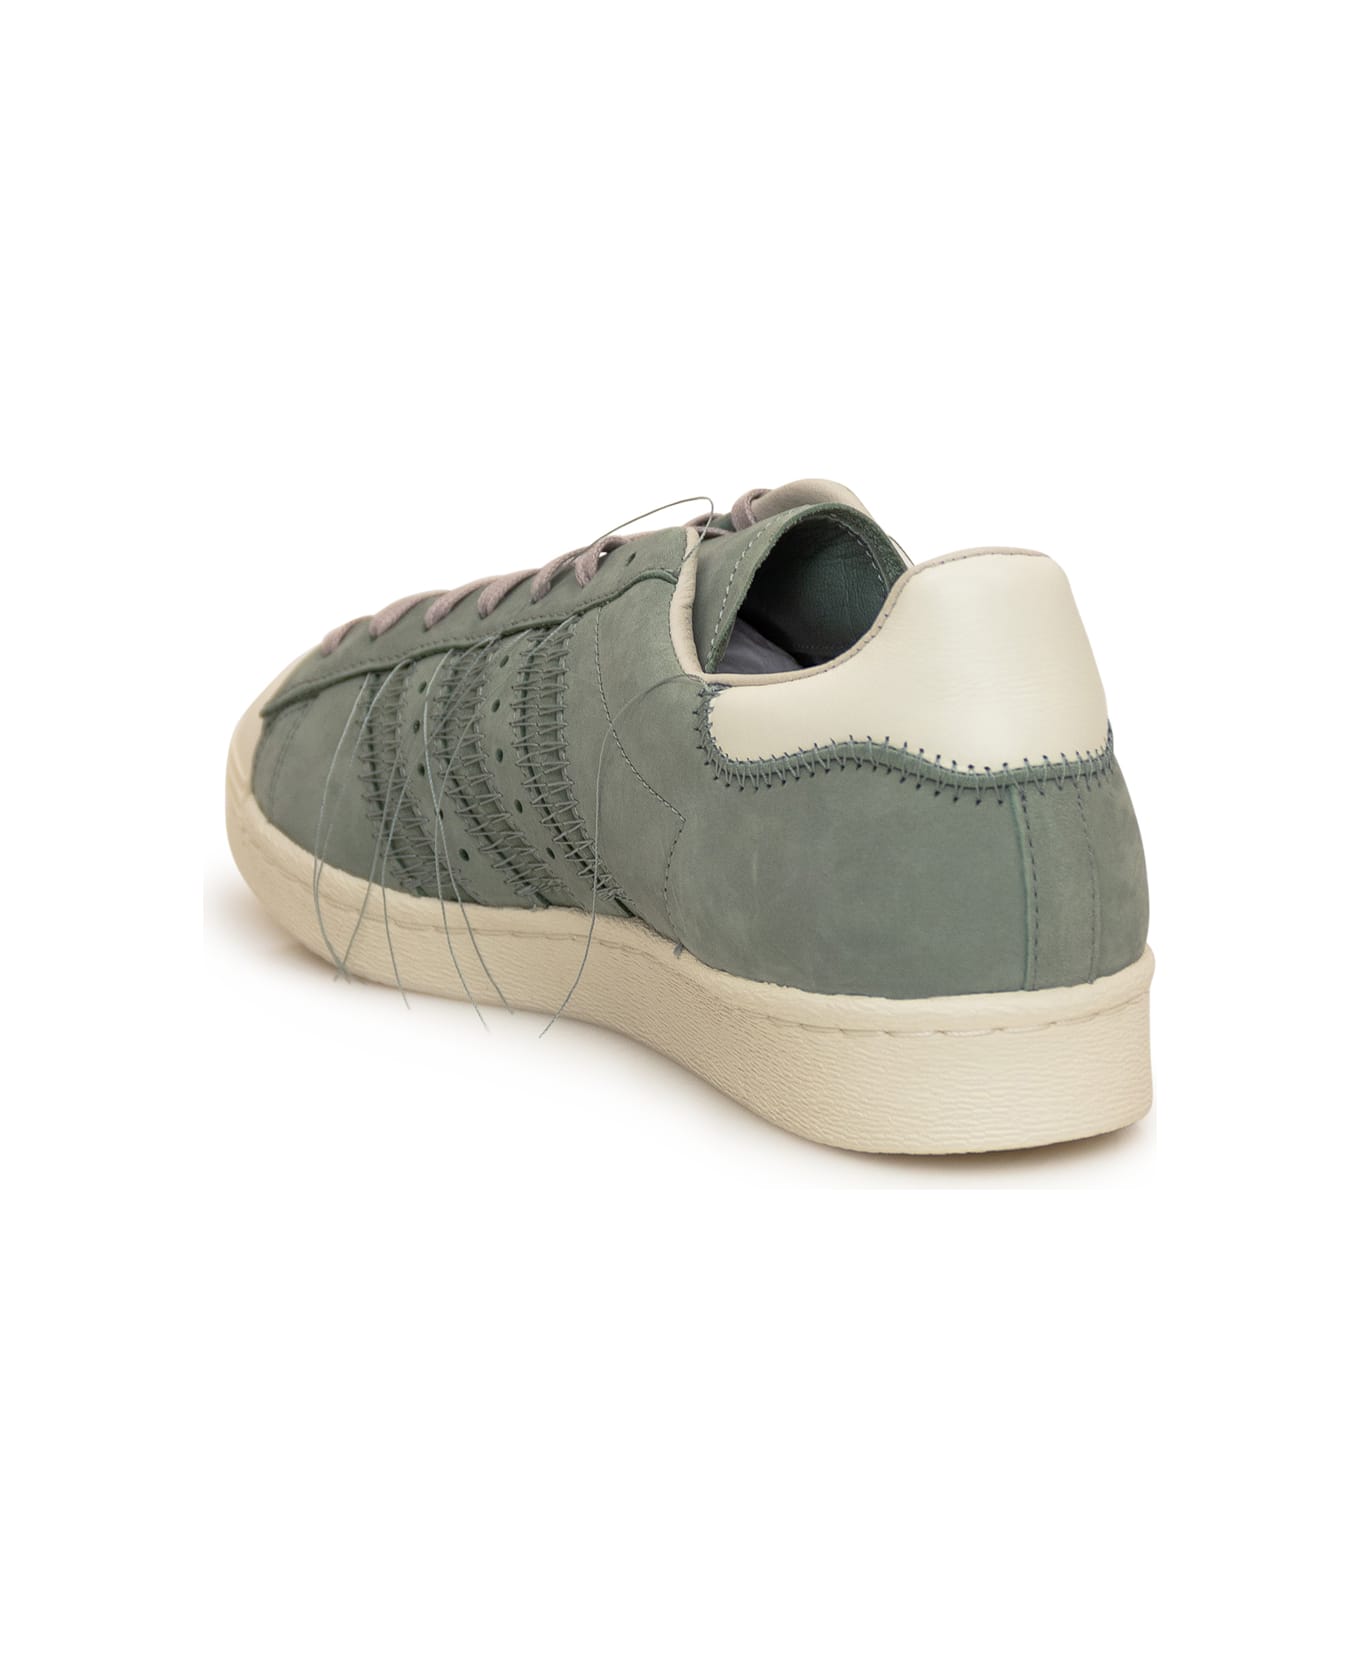 Y-3 Adidas Superstar Sneakers Ig0801 - SILGRN/OWHITE/LBROWN